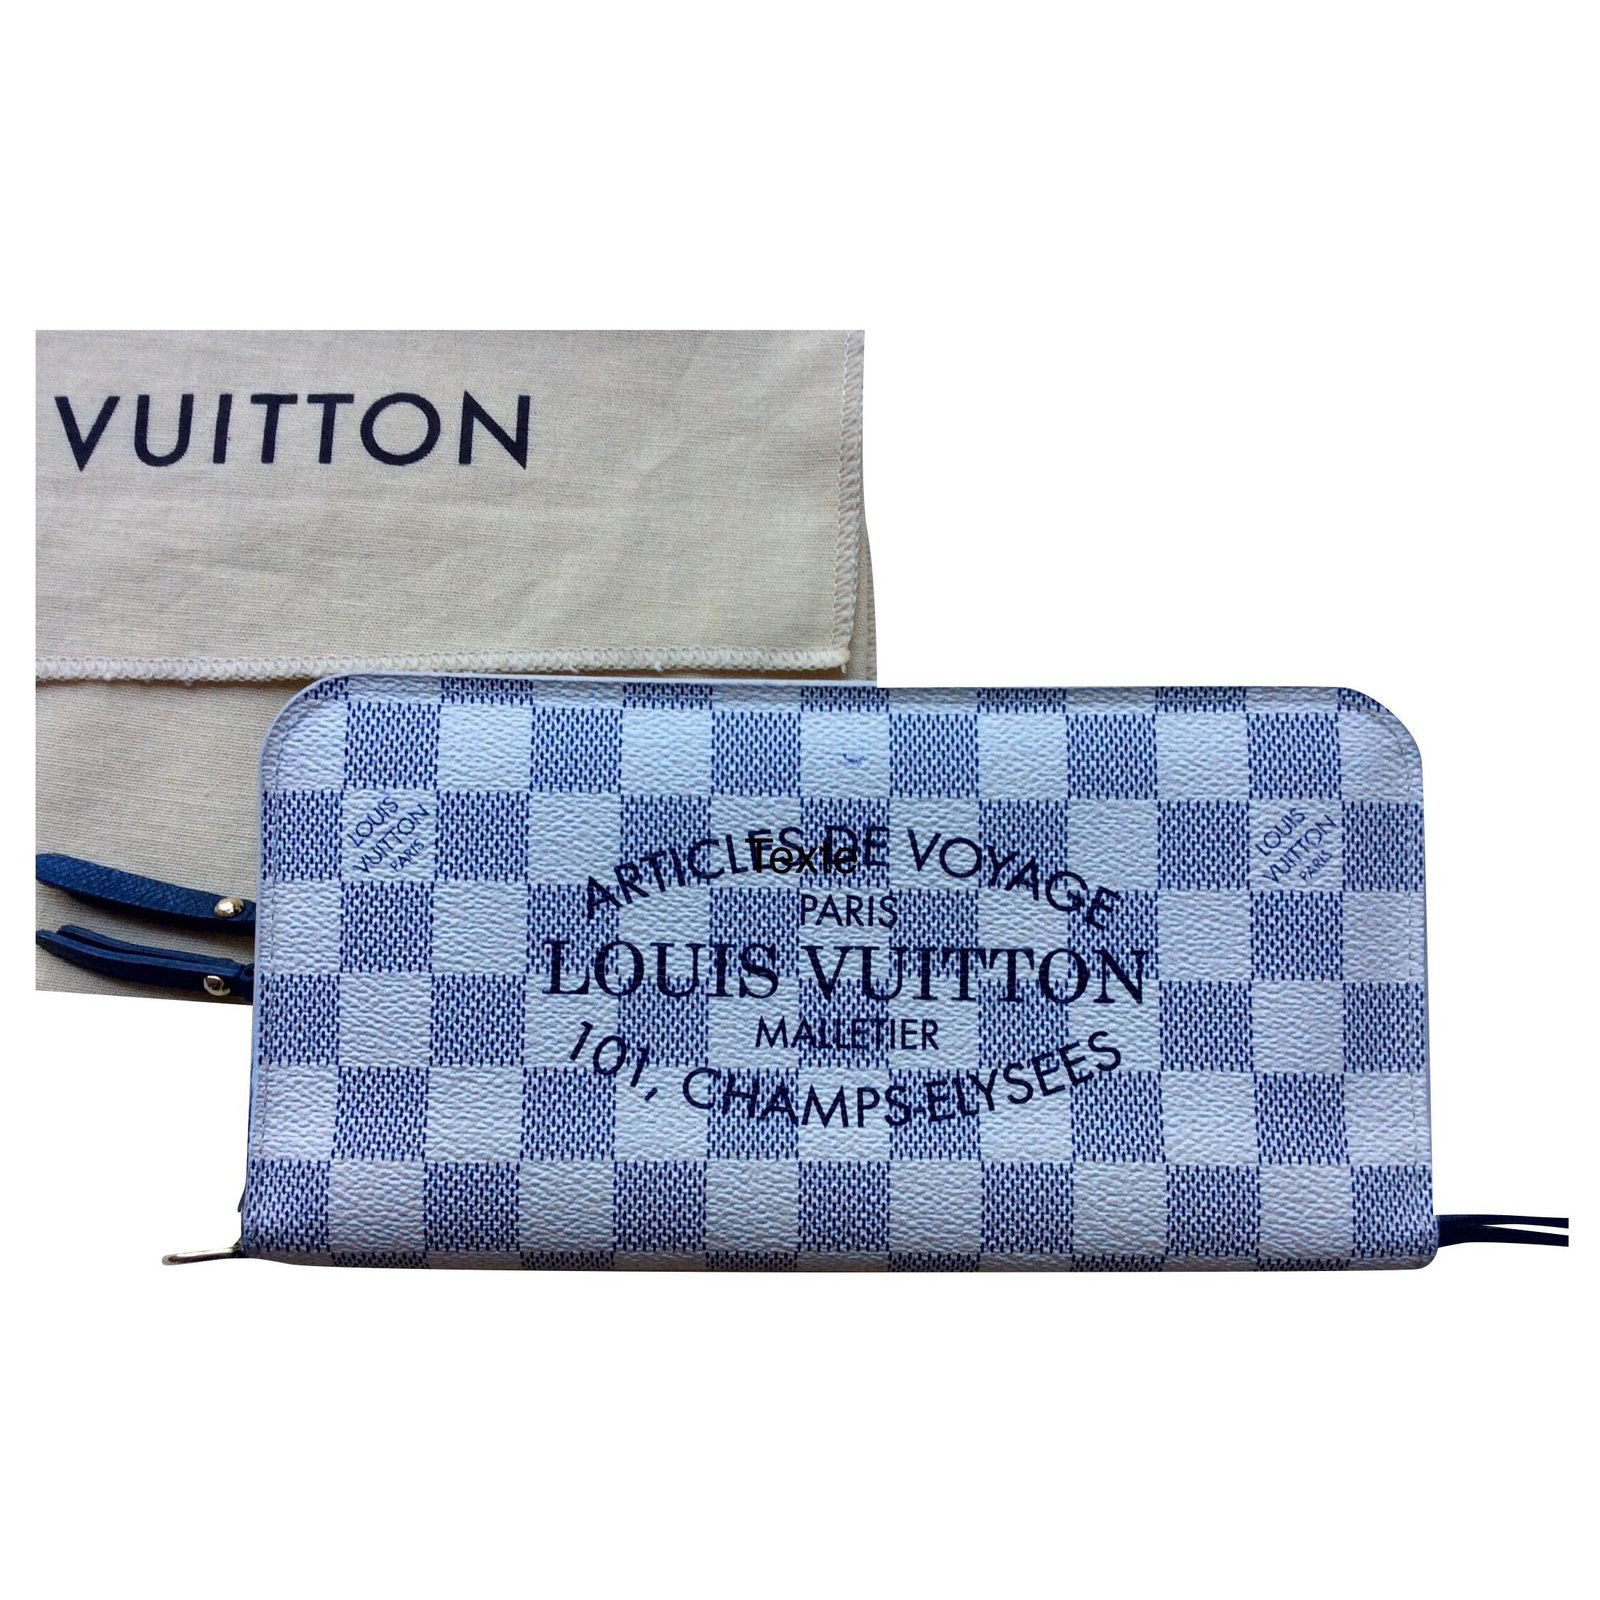 Authentic LOUIS VUITTON Damier portefeuille Brazza N60017 Wallet